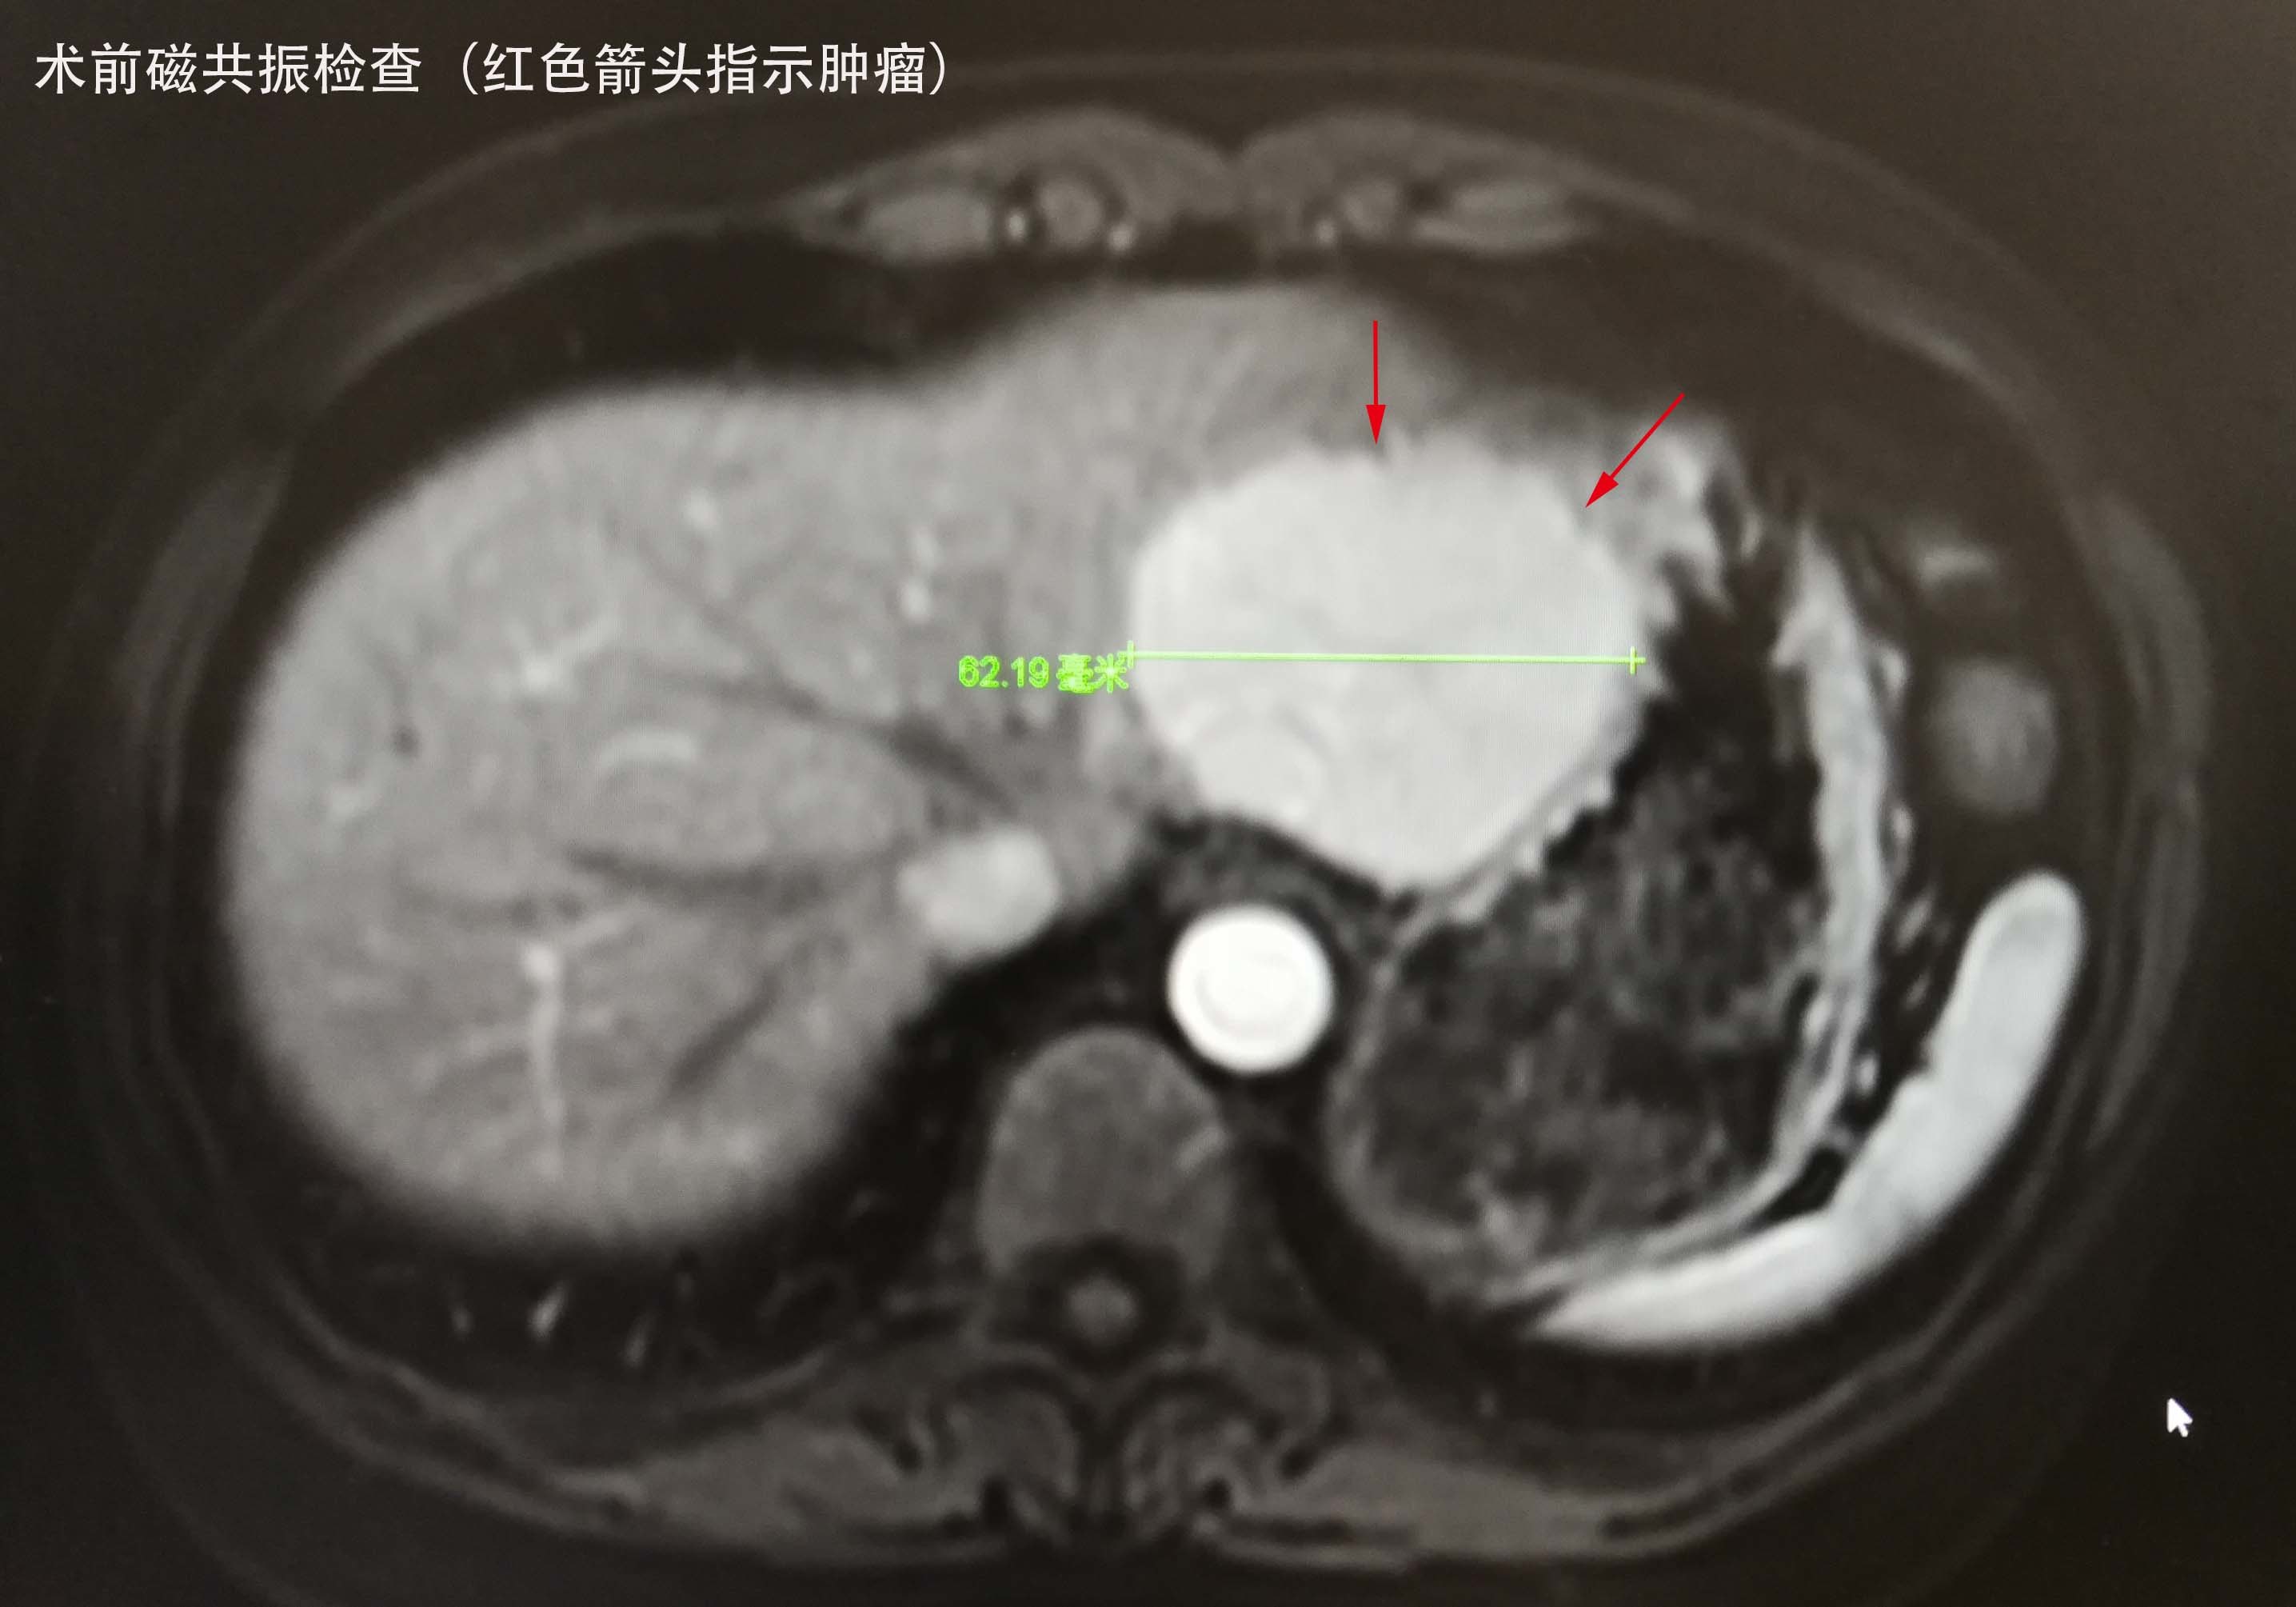 肝肿瘤的腹腔镜微创手术切除一例 - 好大夫在线